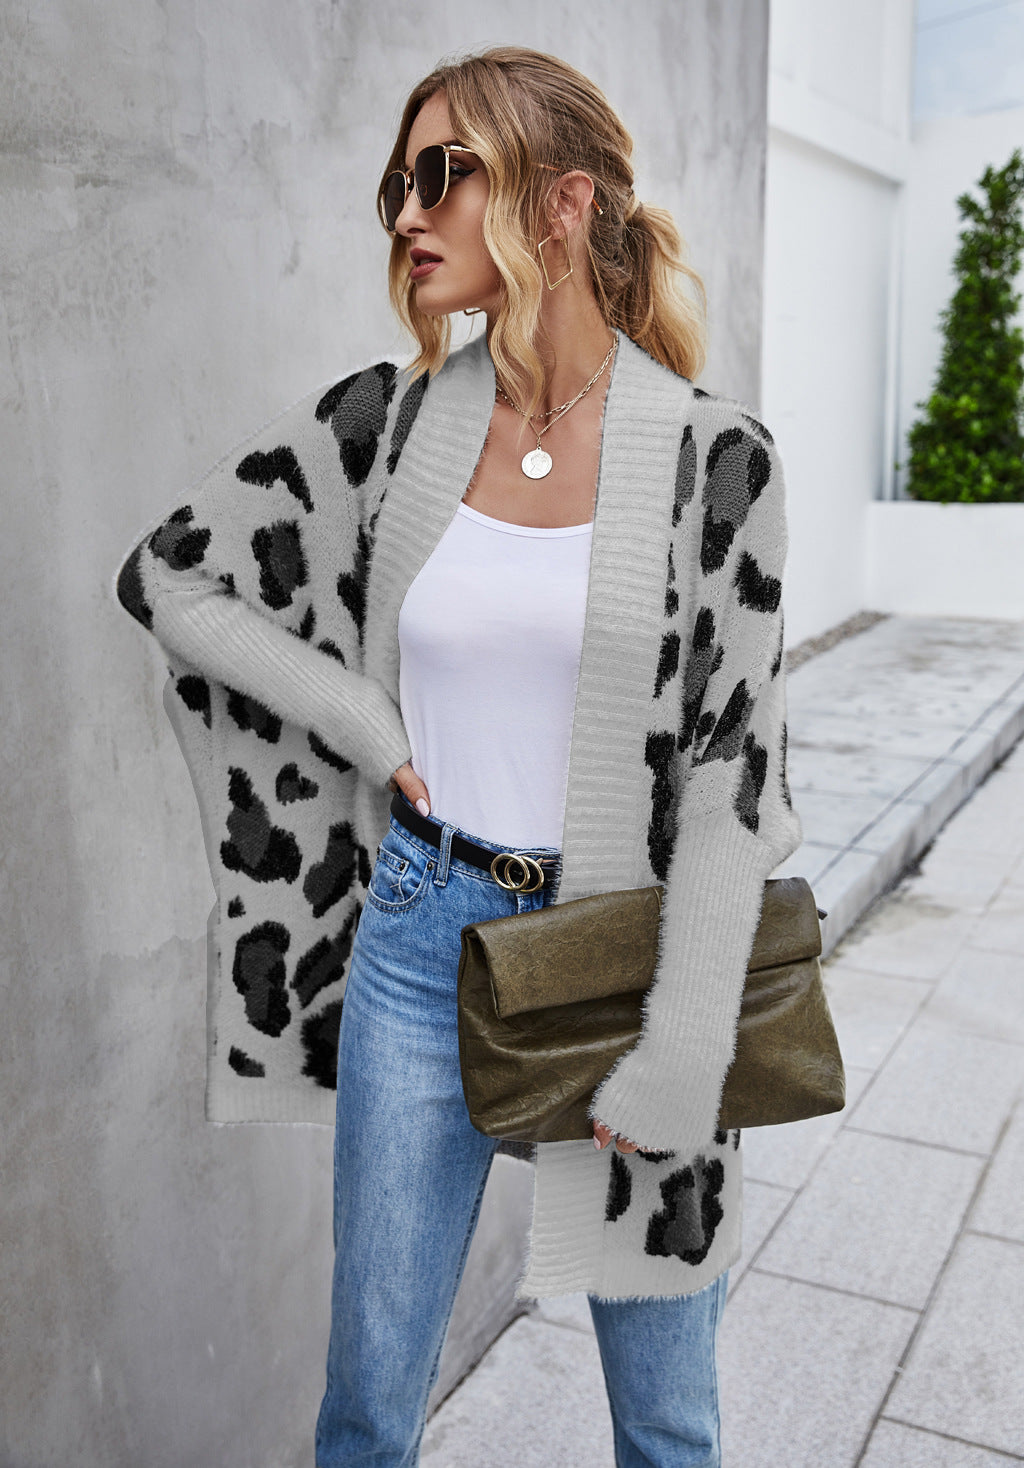 Cardigan de grande taille pour femmes d'hiver manteau de rue personnalité mode pull imprimé léopard